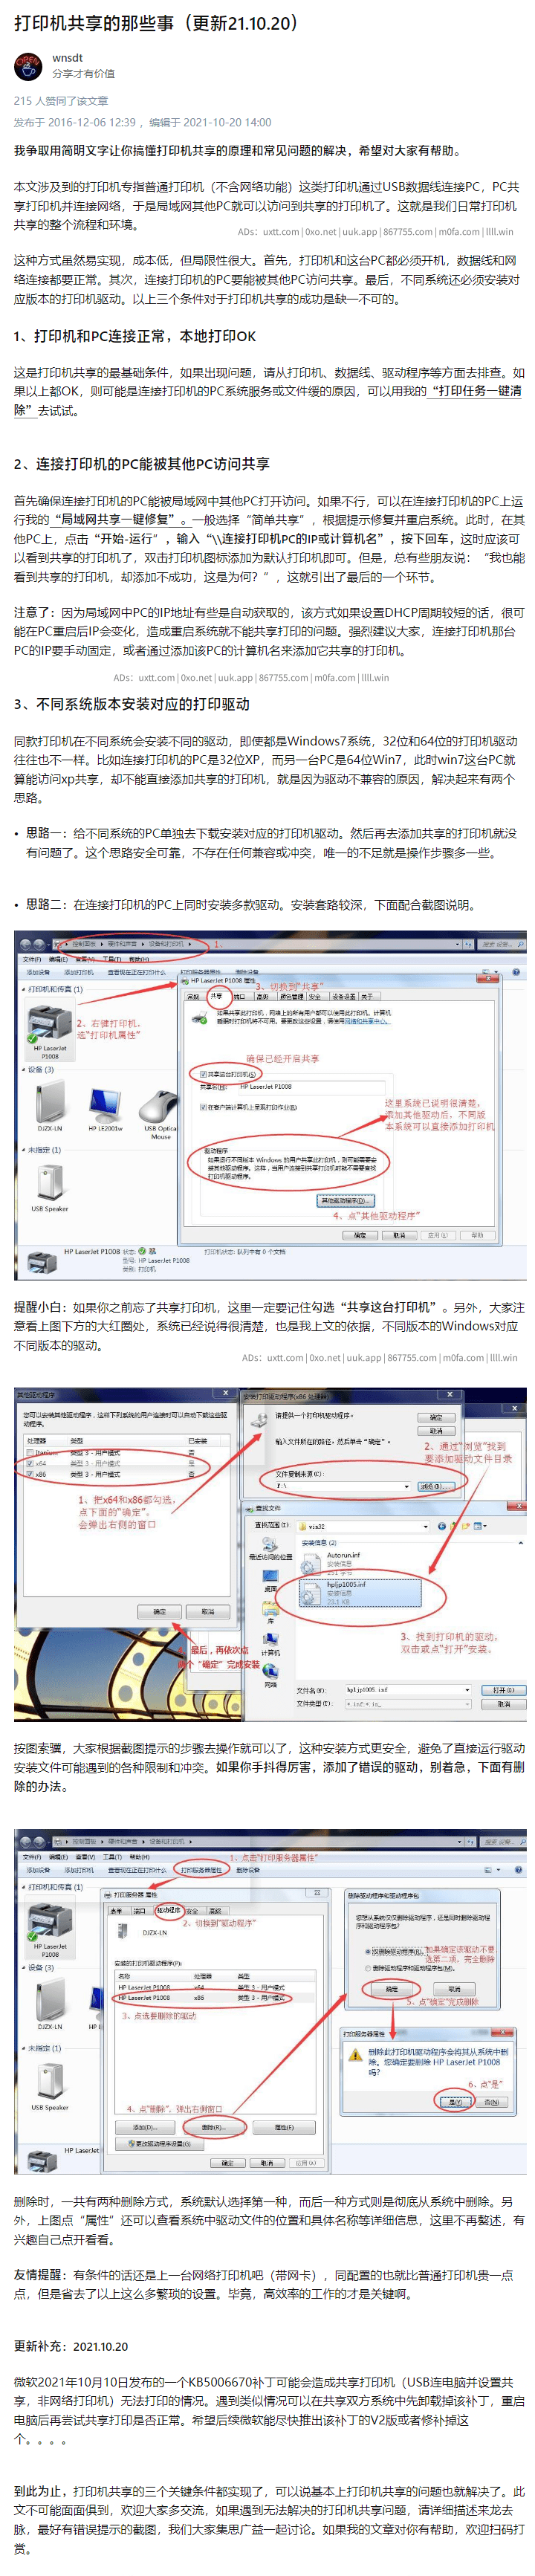 Windows 局域网文件夹打印机共享一键修复工具合集 - 第2张图片